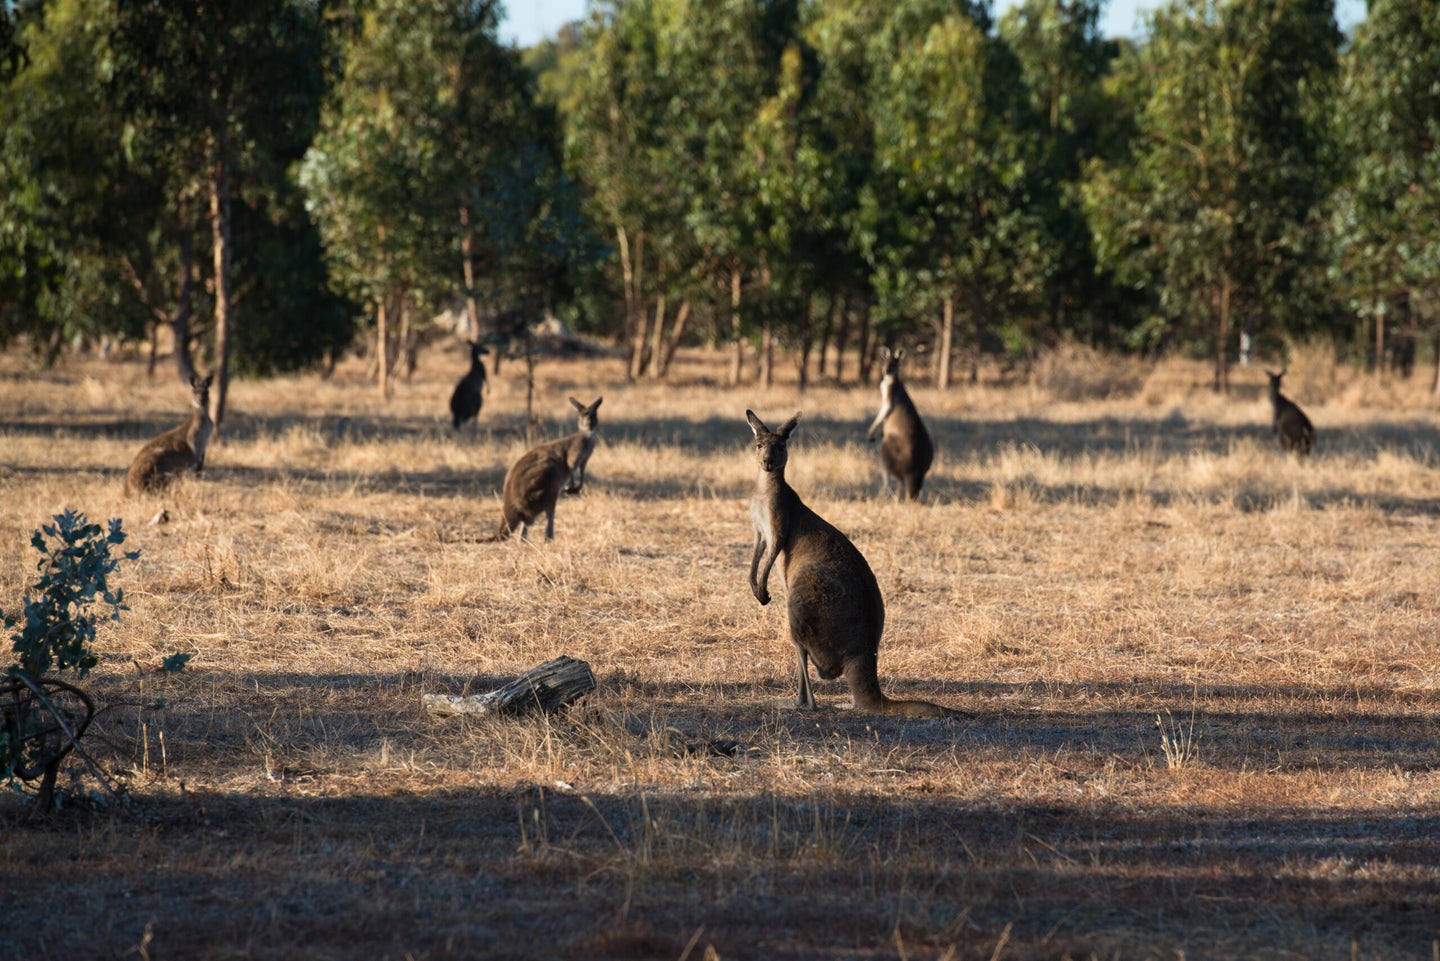 Kangaroos in Western Australia